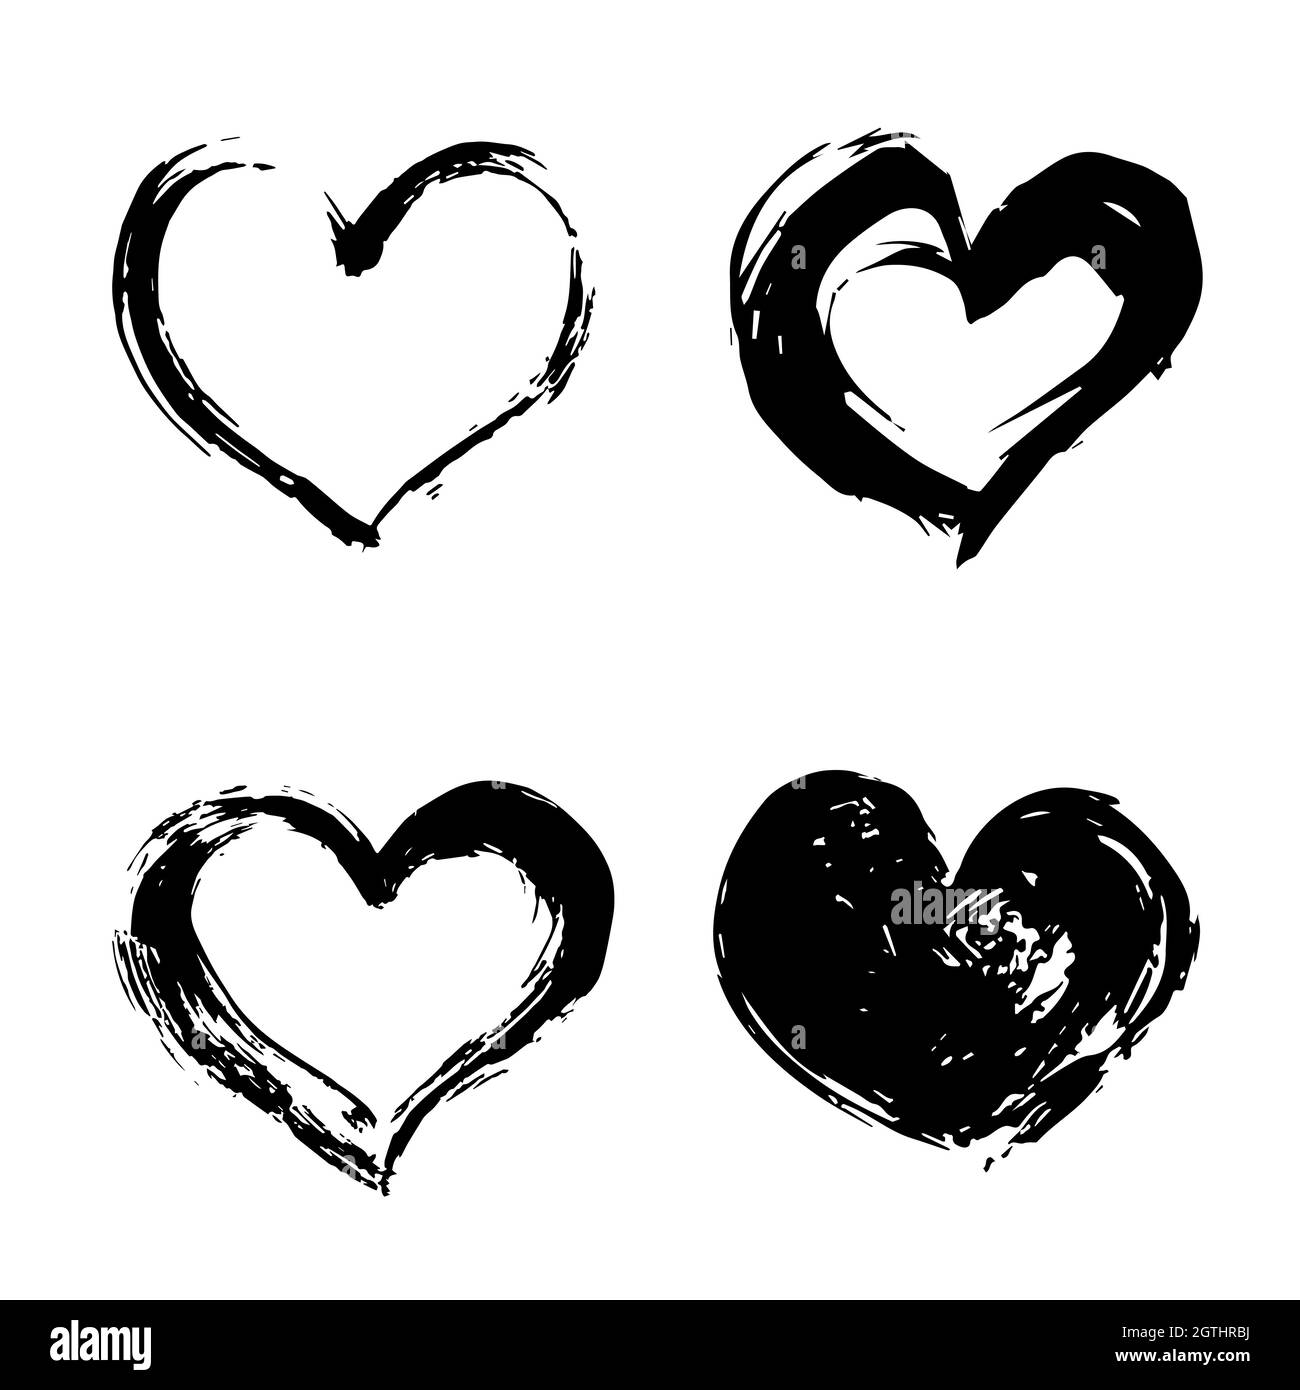 Ensemble de quatre coeurs noirs dessinés à la main isolés sur blanc. Illustration du vecteur cardiaque grunge. Formes rugueuses. Aquarelle ou effet de peinture acrylique. Valentin Illustration de Vecteur